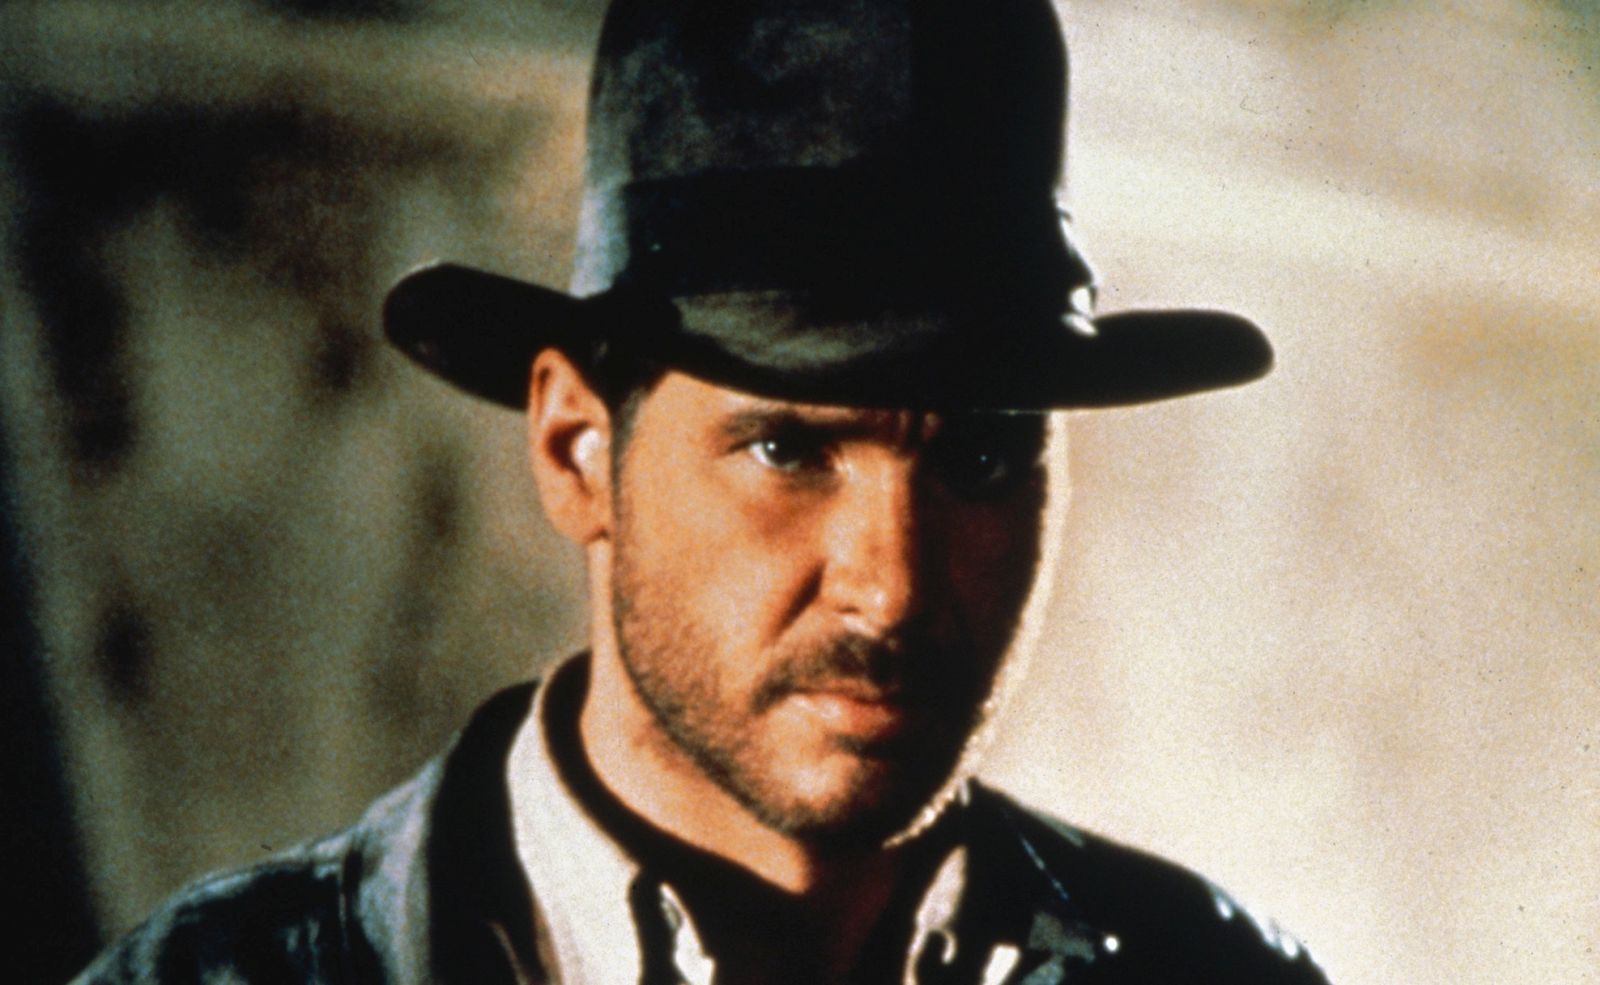 Dolby Vision e 4K: la saga di Indiana Jones come non l'avete mai vista